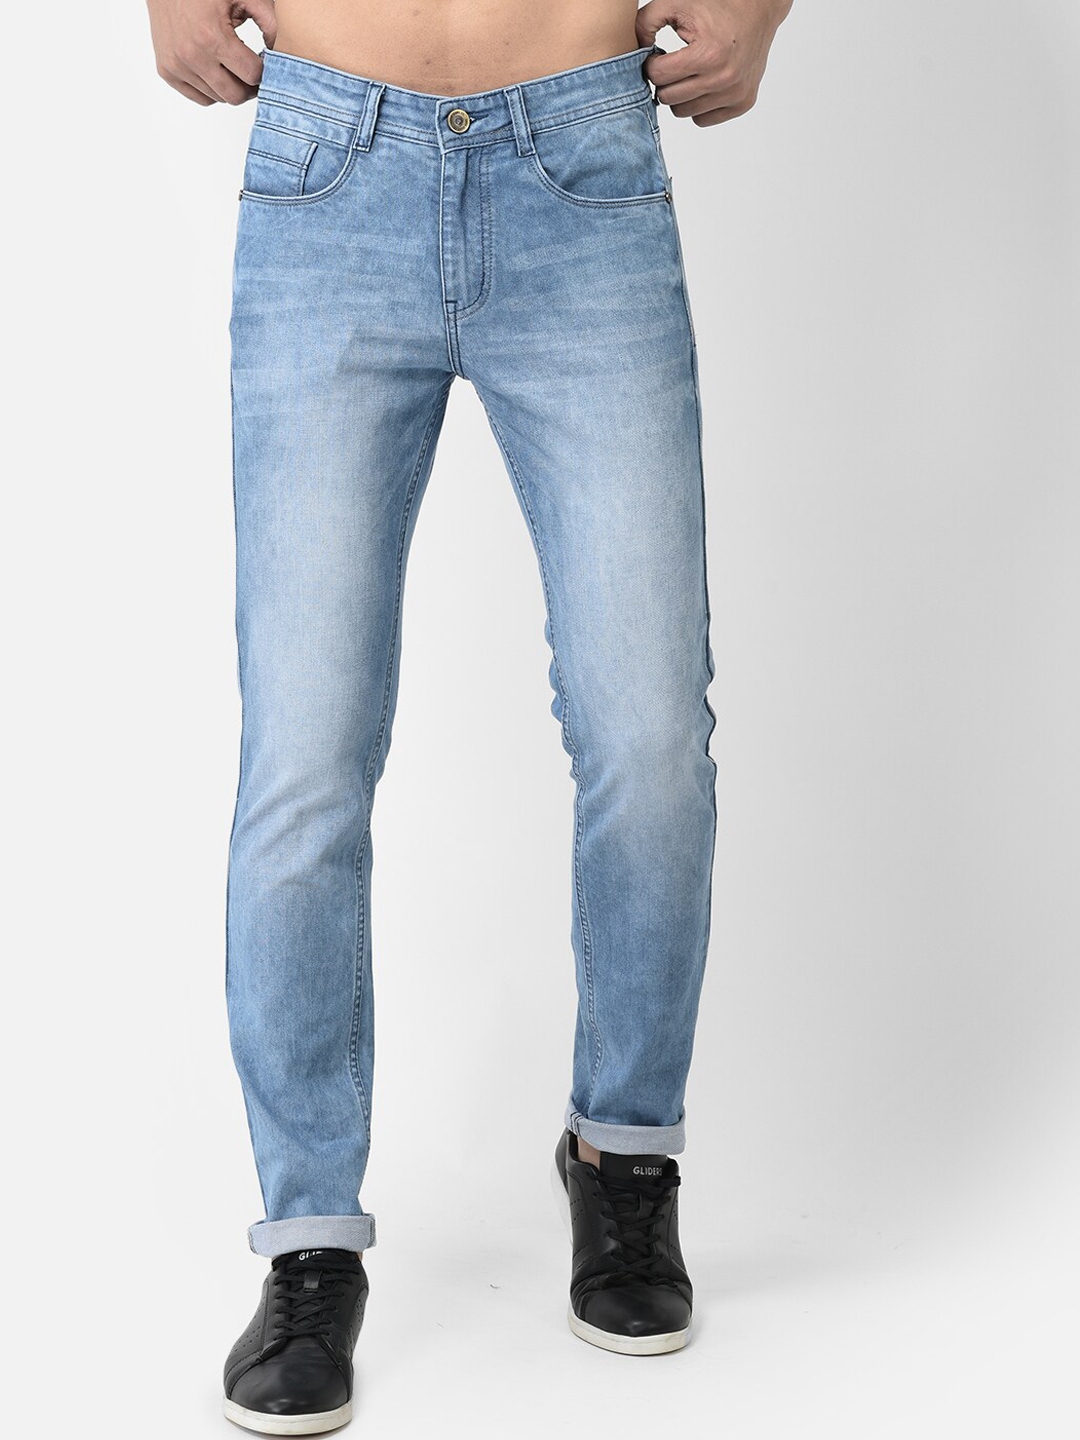 Buy COBB Men Slim Fit Light Fade Cotton Jeans - Jeans for Men 22297188 ...